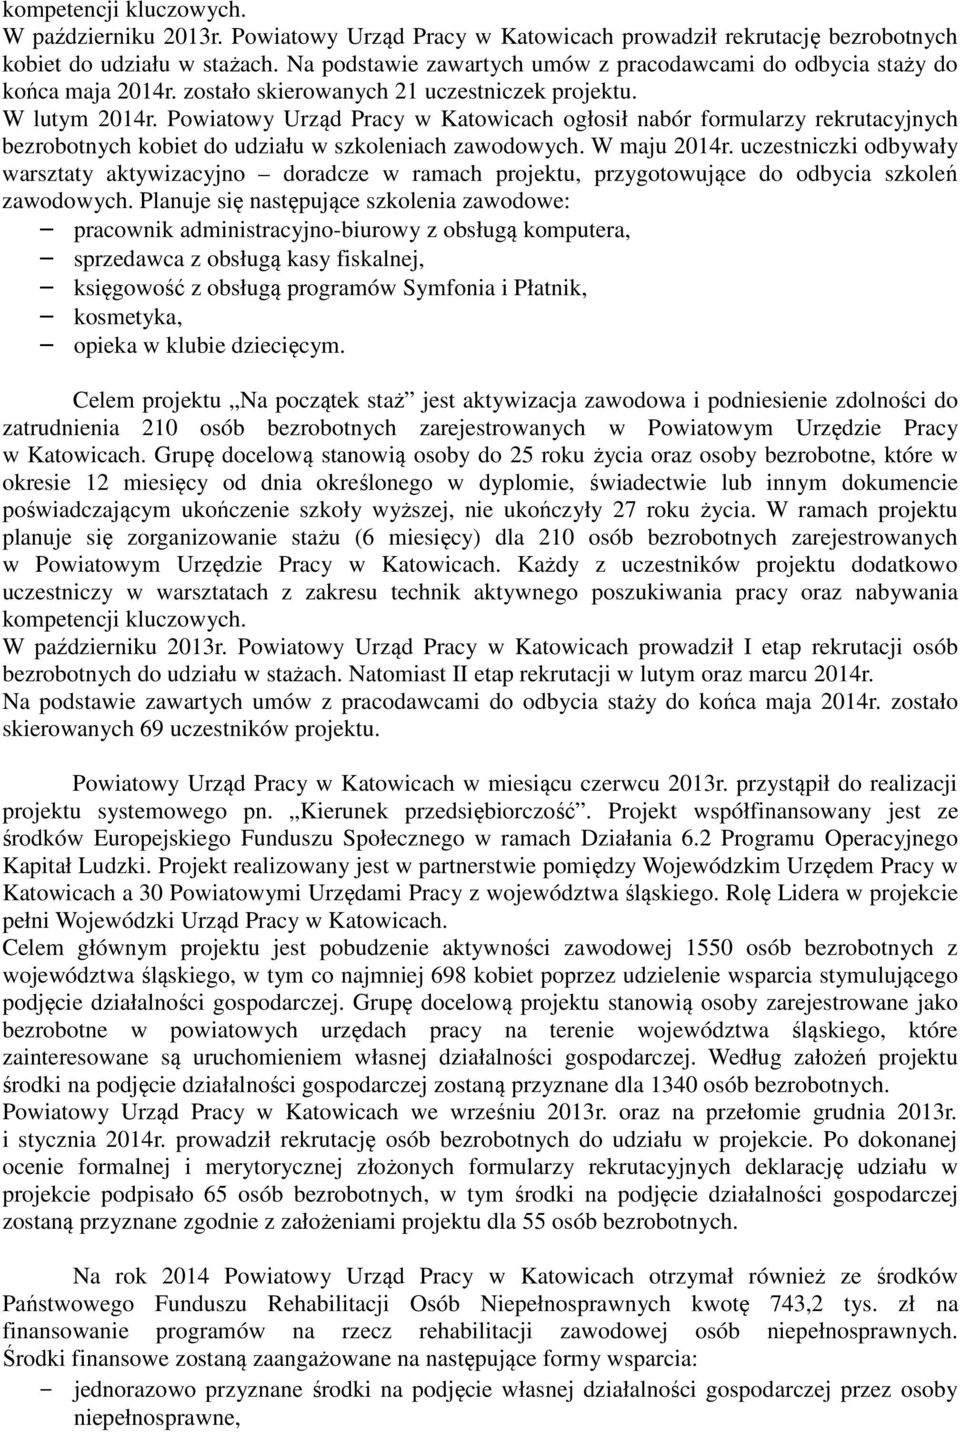 Powiatowy Urząd Pracy w Katowicach ogłosił nabór formularzy rekrutacyjnych bezrobotnych kobiet do udziału w szkoleniach zawodowych. W maju 2014r.